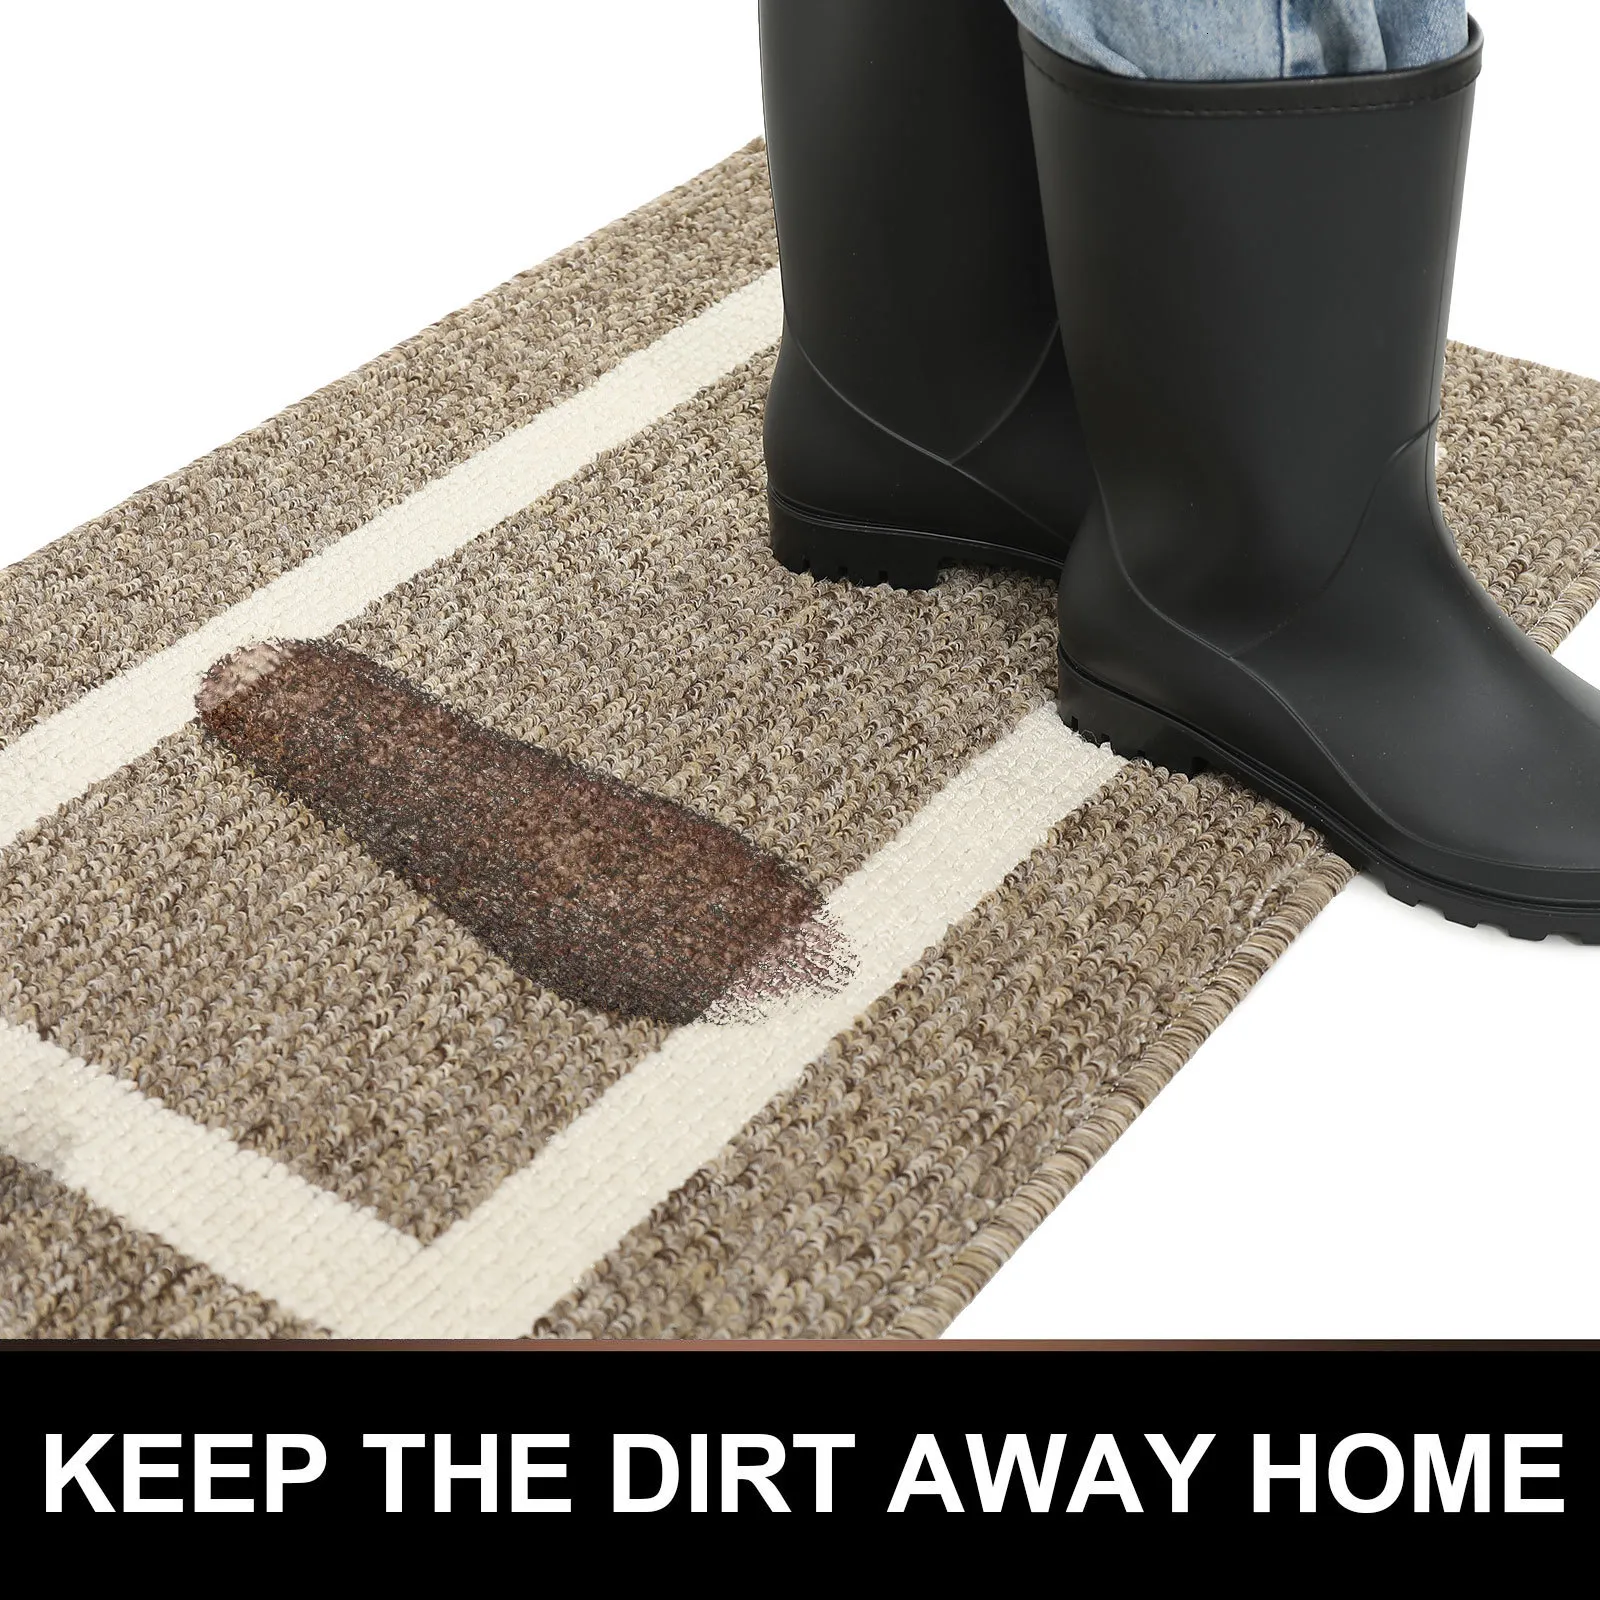 Olanly Dirt Resistant Entrance Door Mat Outdoor Soft Kitchen Rug Floor  Protector